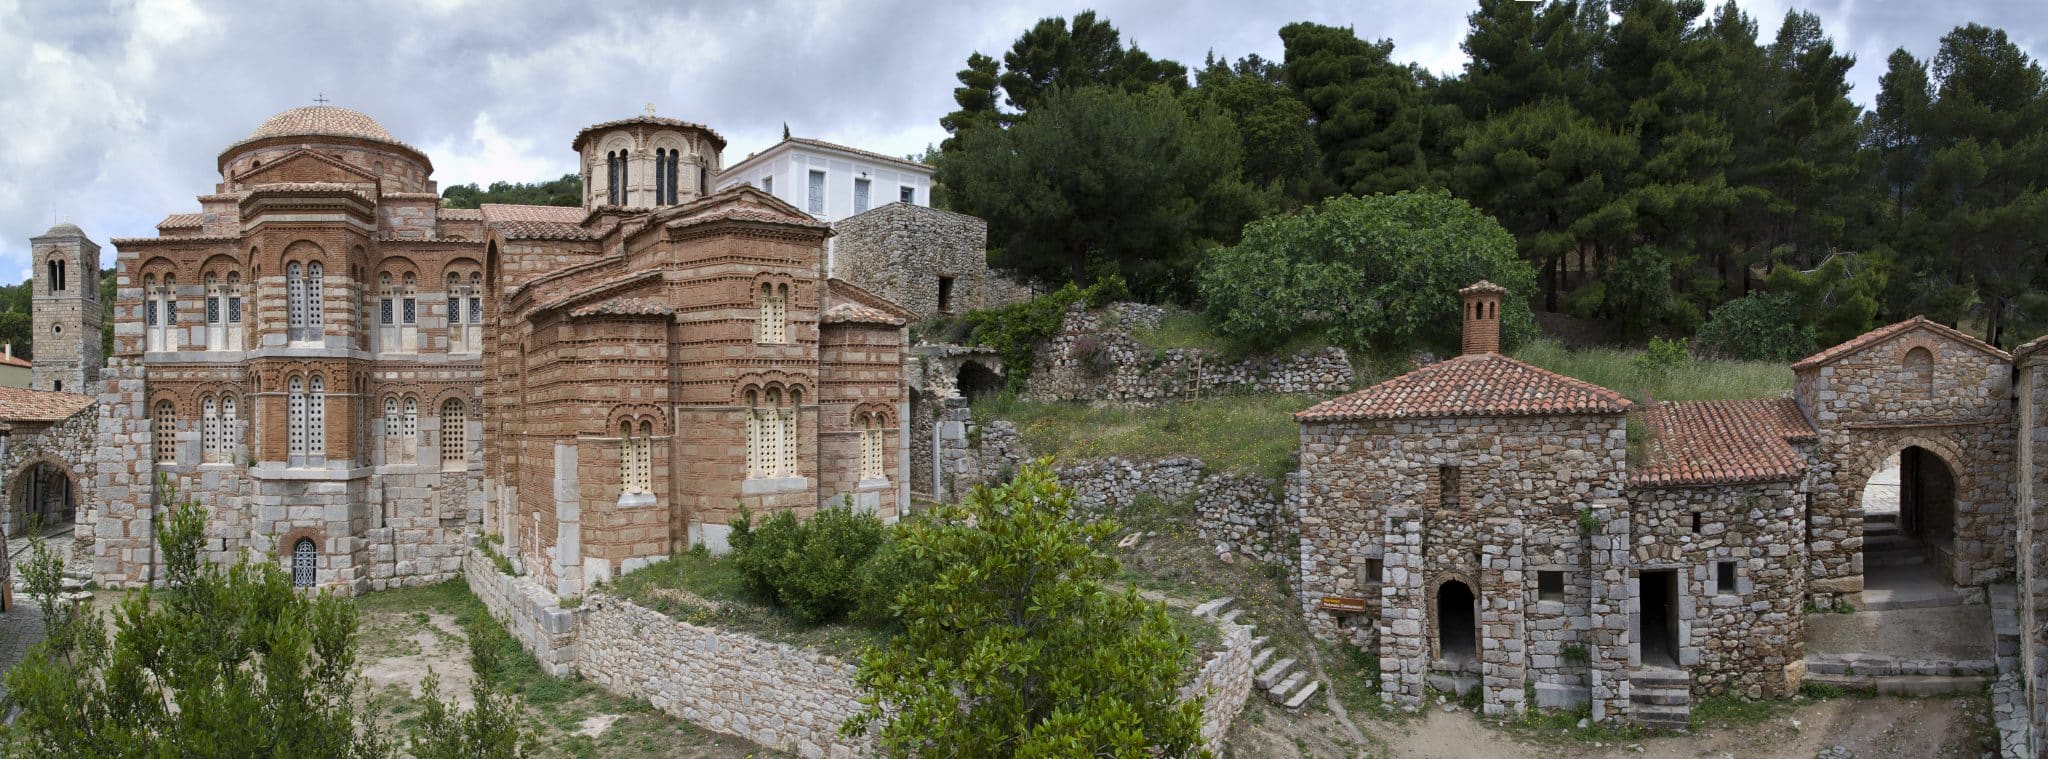 osios loukas moni 27 8 2023.jpg scaled - Μονή Οσίου Λουκά: Εγκρίθηκε η αποκατάσταση μετά την φωτιά στη Βοιωτία - Το καλύτερα διατηρημένο μοναστηριακό συγκρότημα της μεσοβυζαντινής περιόδου (εικόνες)